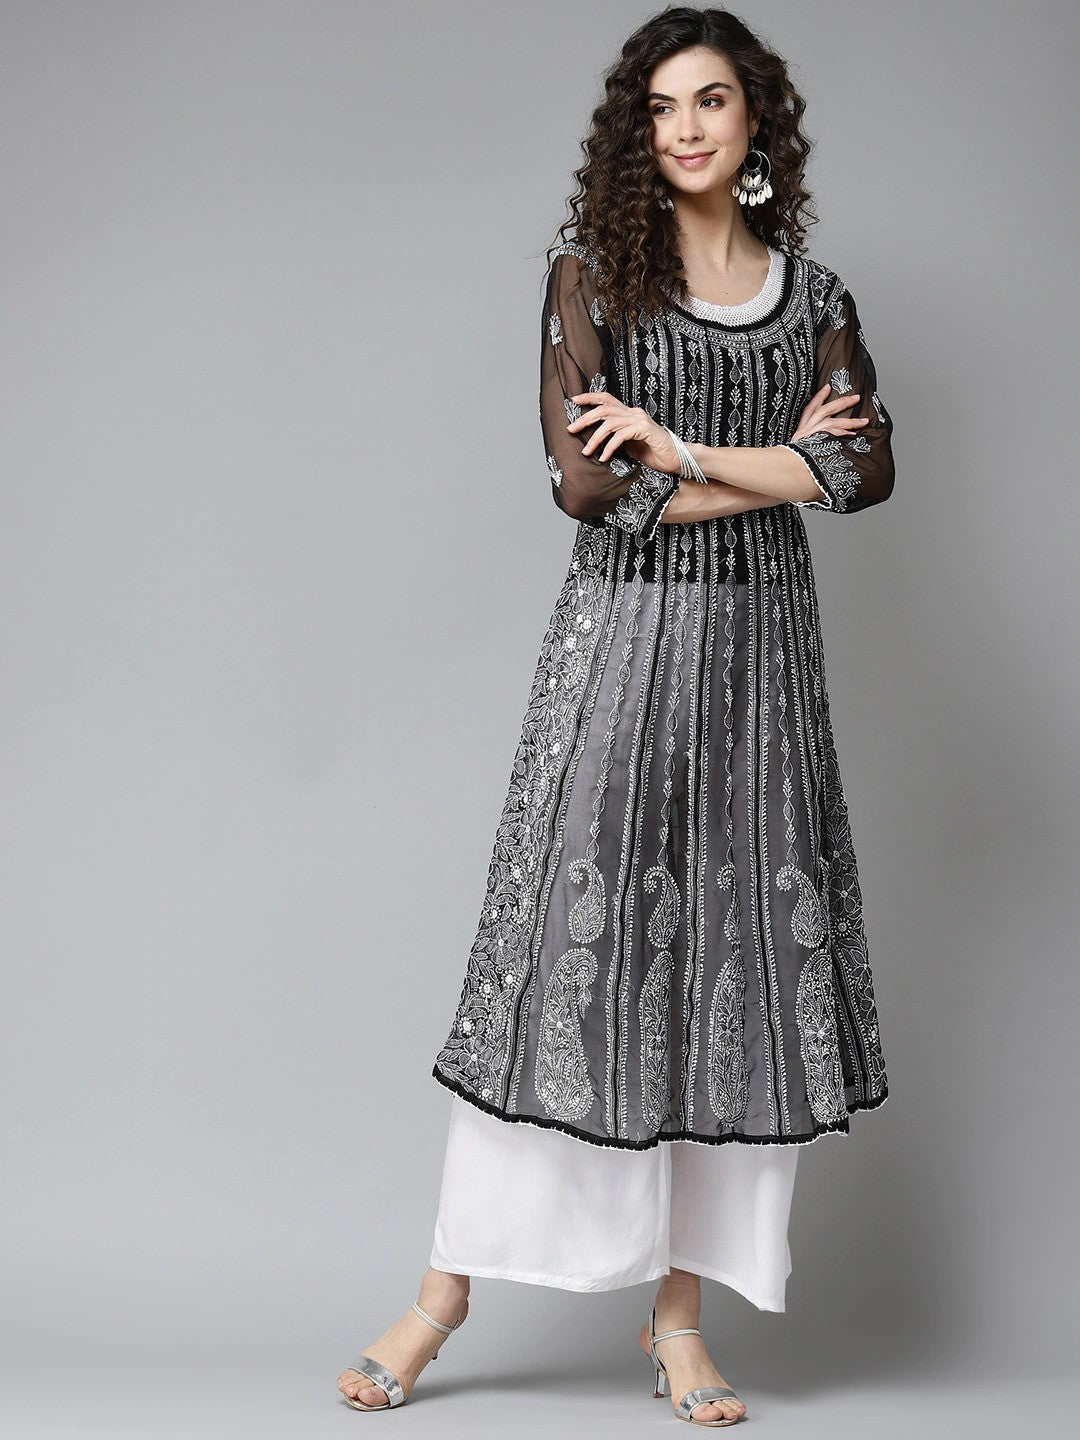 Buy Black Lucknowi Anarkali Dress at PinkPhulkari California